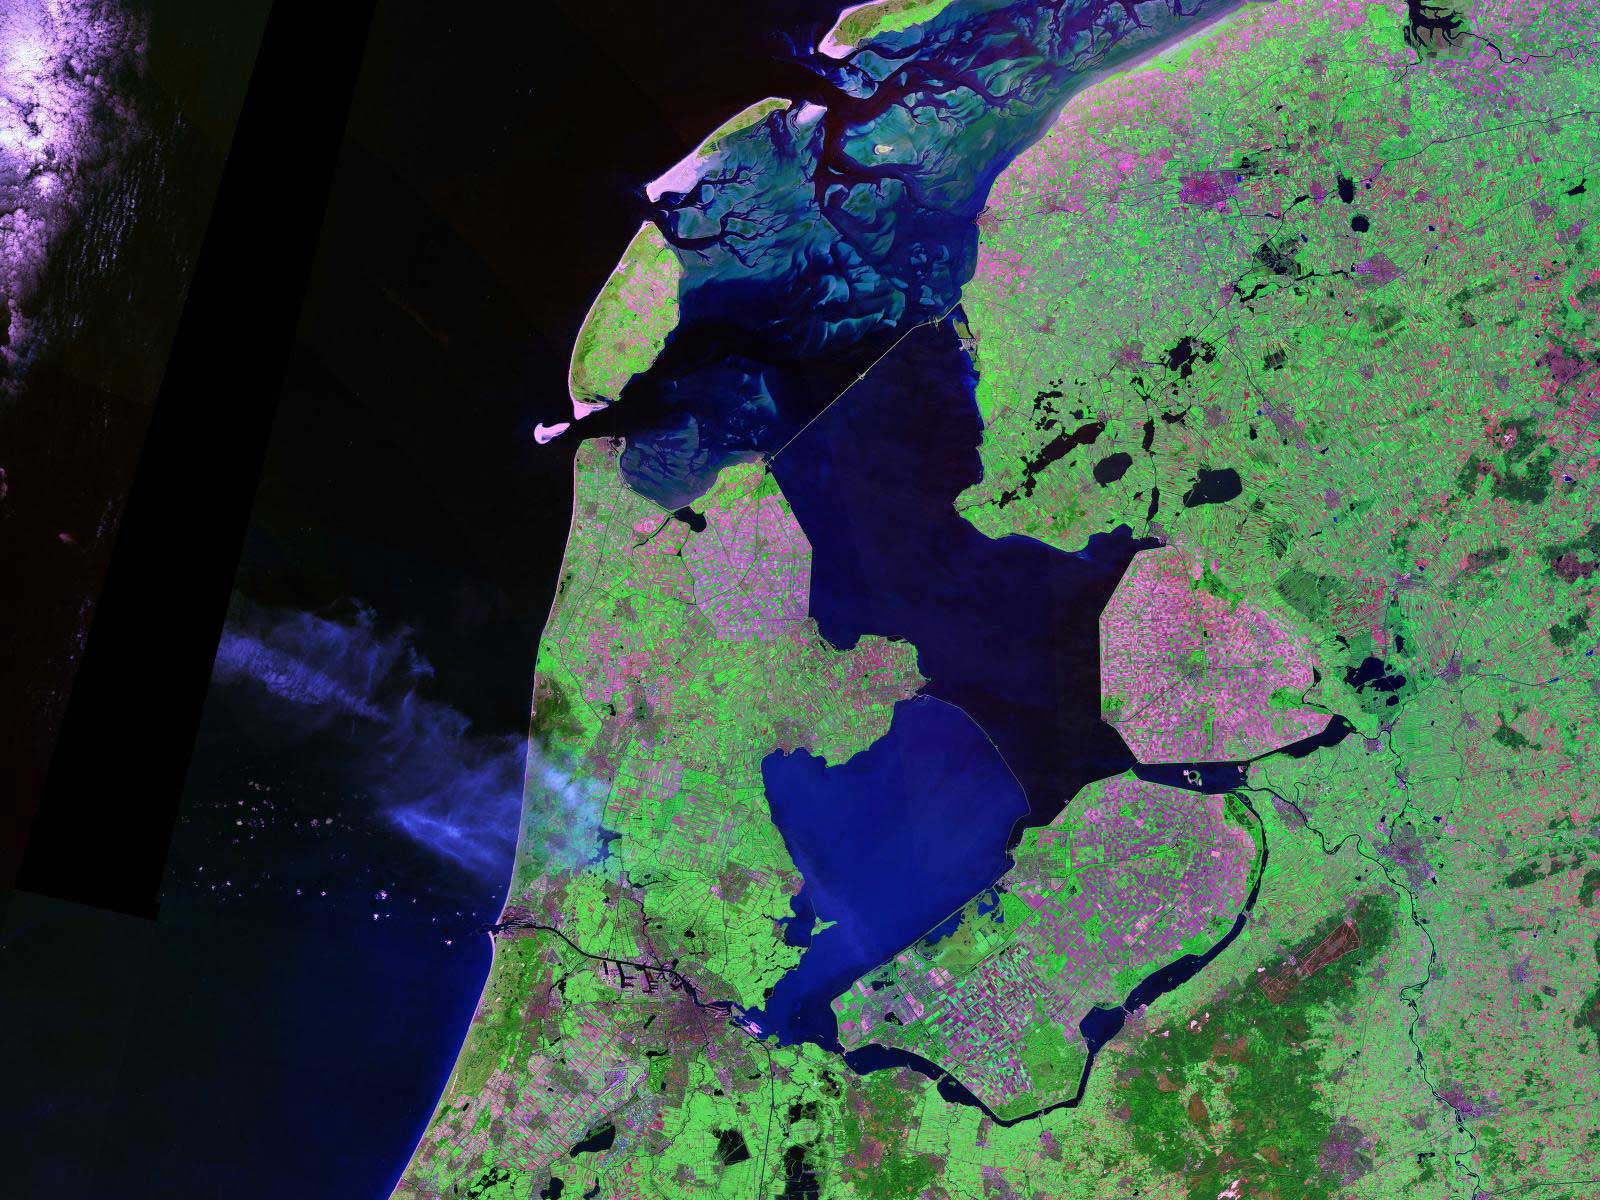 IJsselmeer with Afsluitdijk — 32 kilometres (20 mi) long, 90 metres (300 ft) wide, 7.25 metres (23.8 ft) above the sea level (ESA)